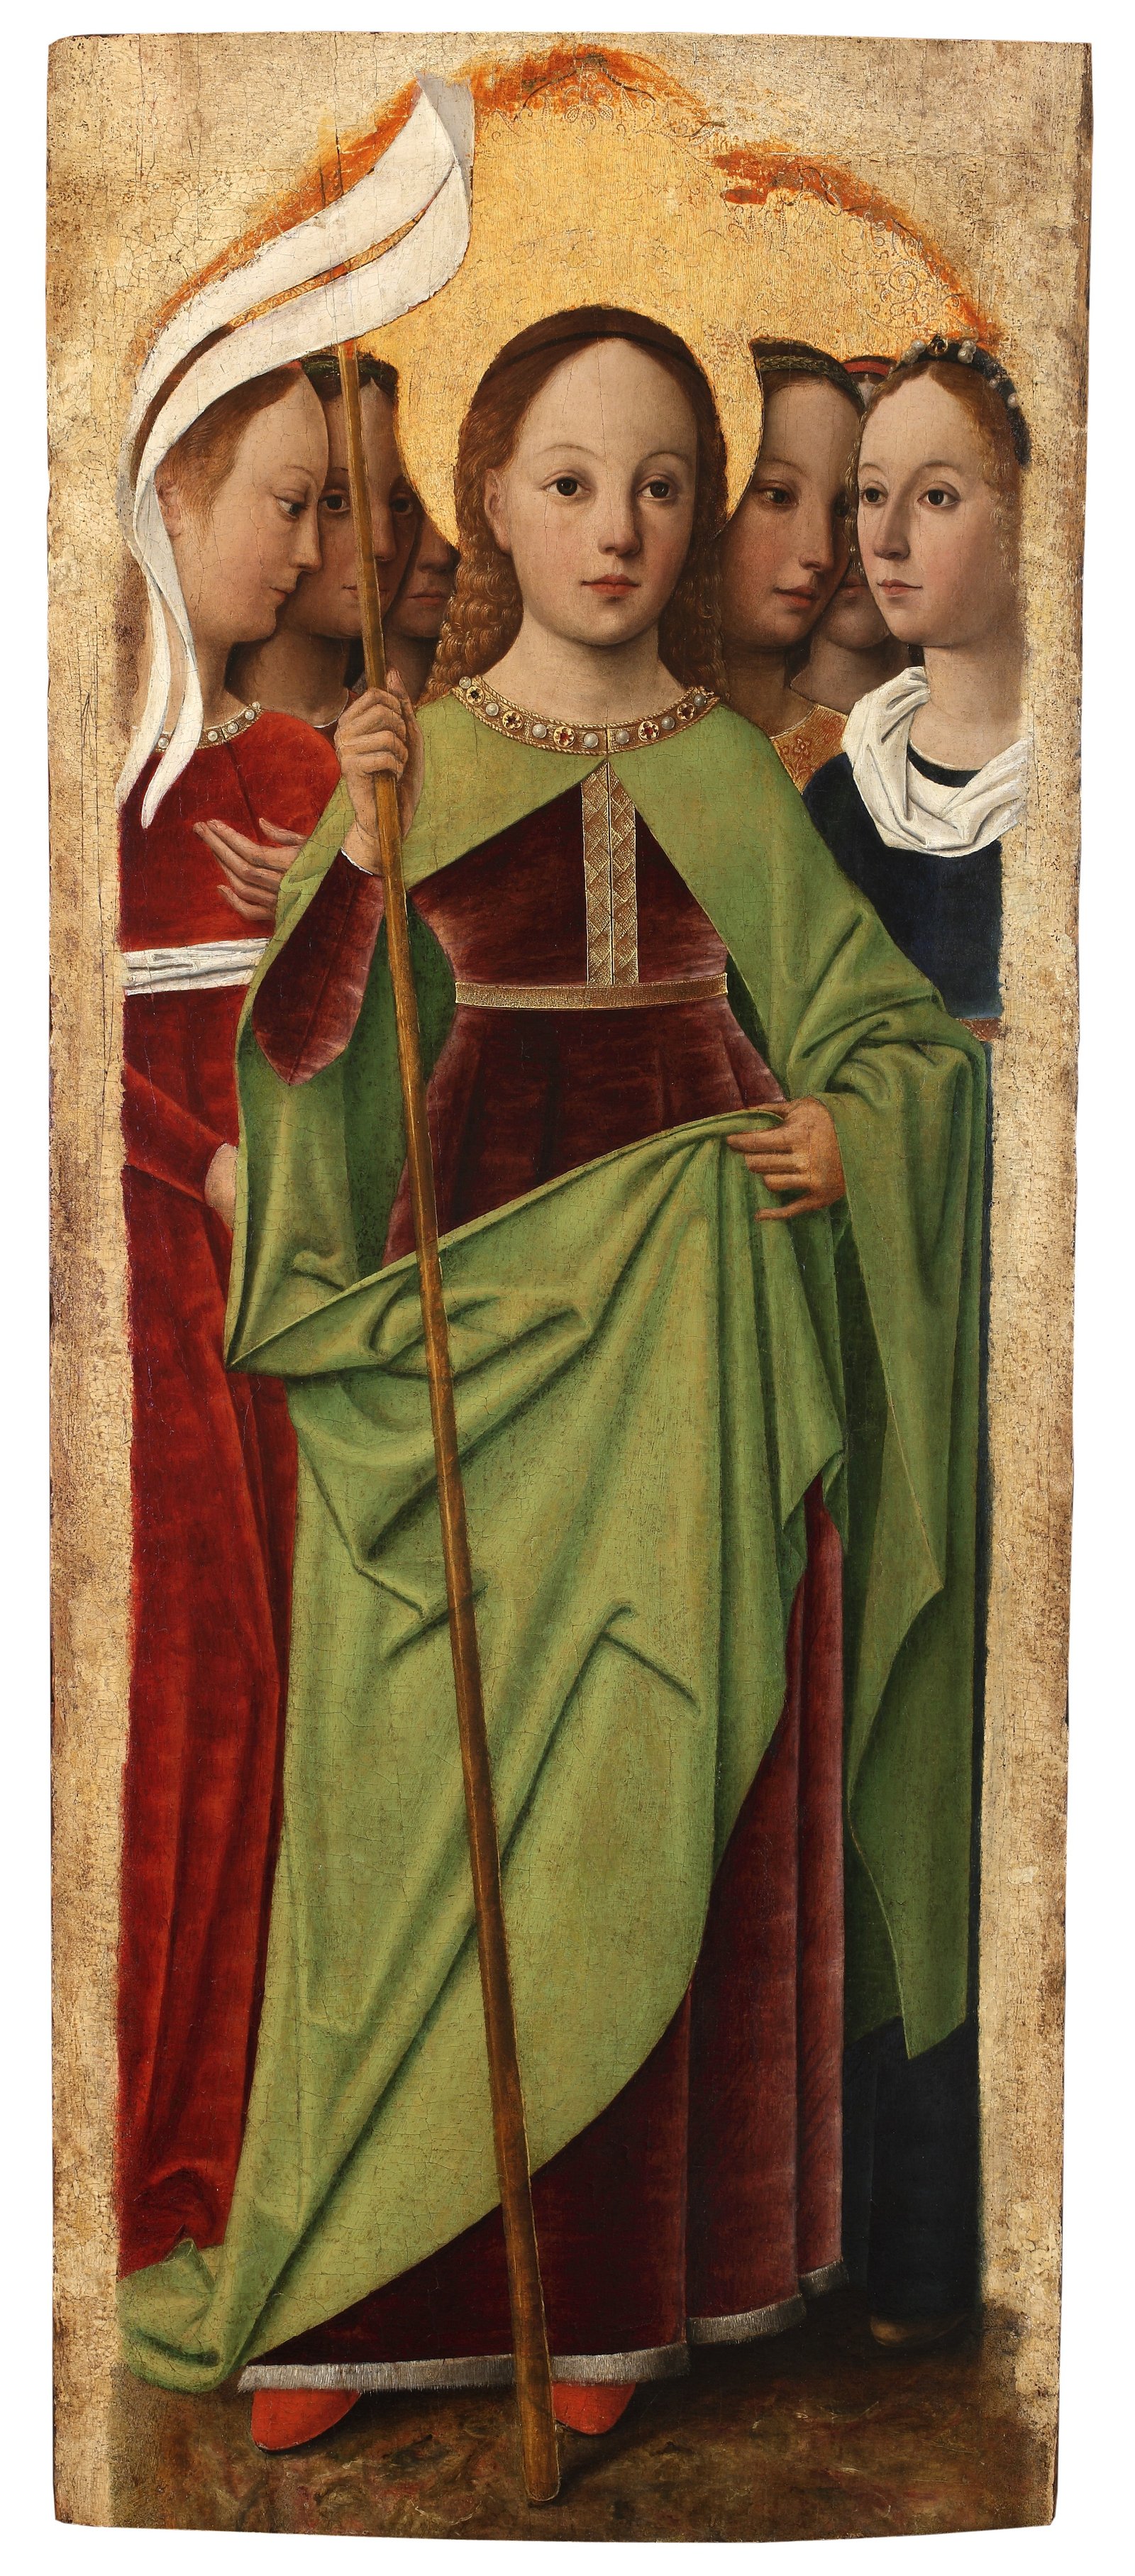 Maestro della Madonna Cagnola (Zanetto Bugatto): Sant’Orsola. Torino, collezione privata